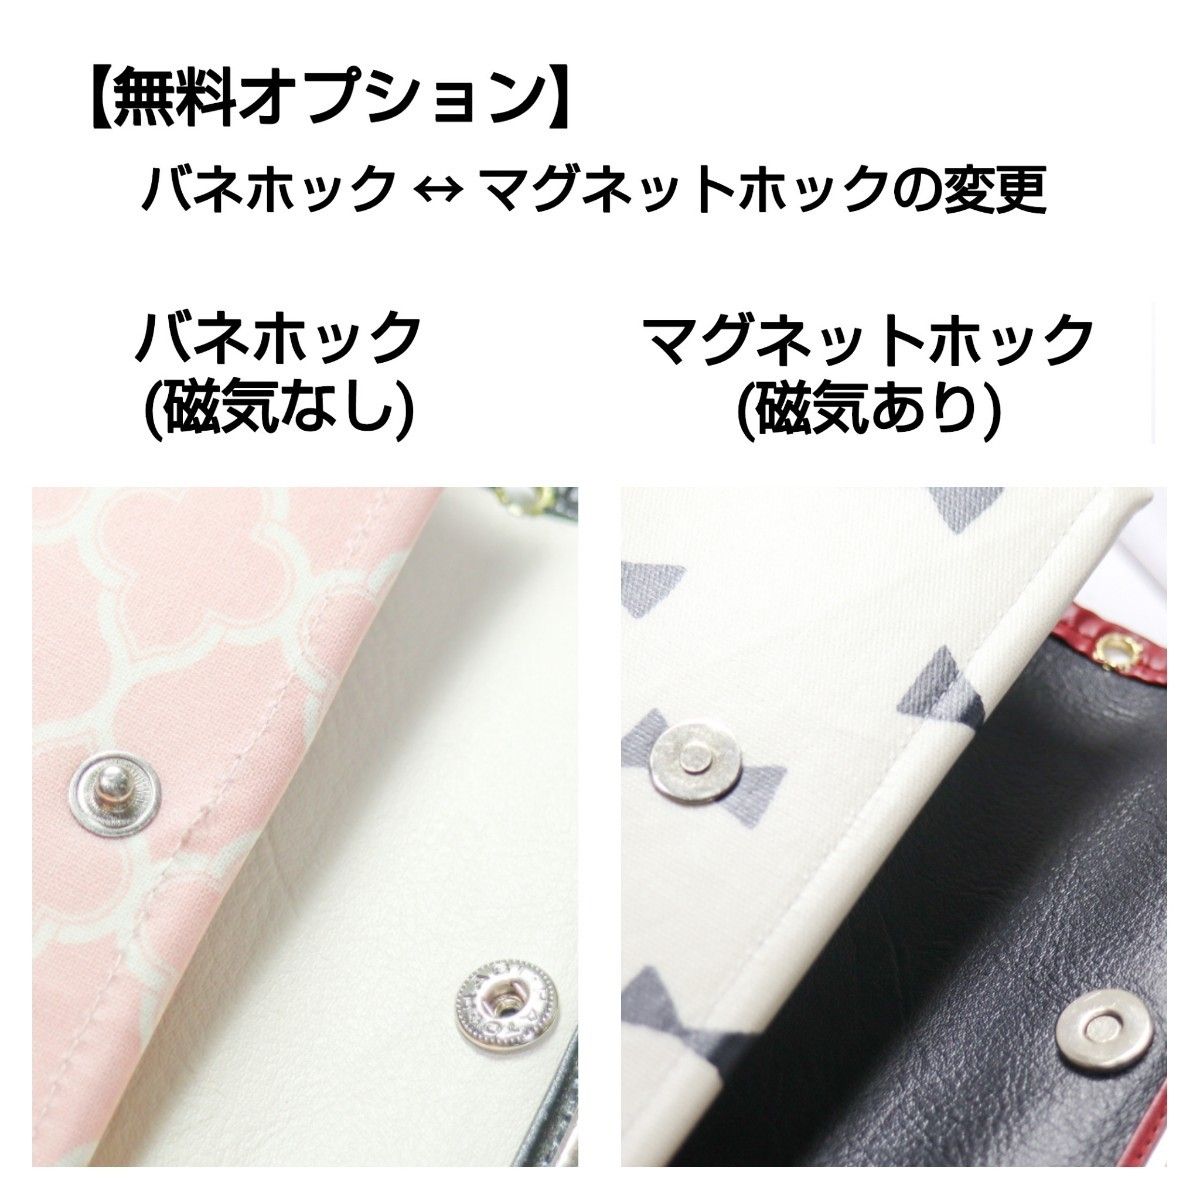 【dam】ハンドメイド オーダーメイド 全機種対応 iPhone・Android 手帳型スマホケース ダマスク グレー